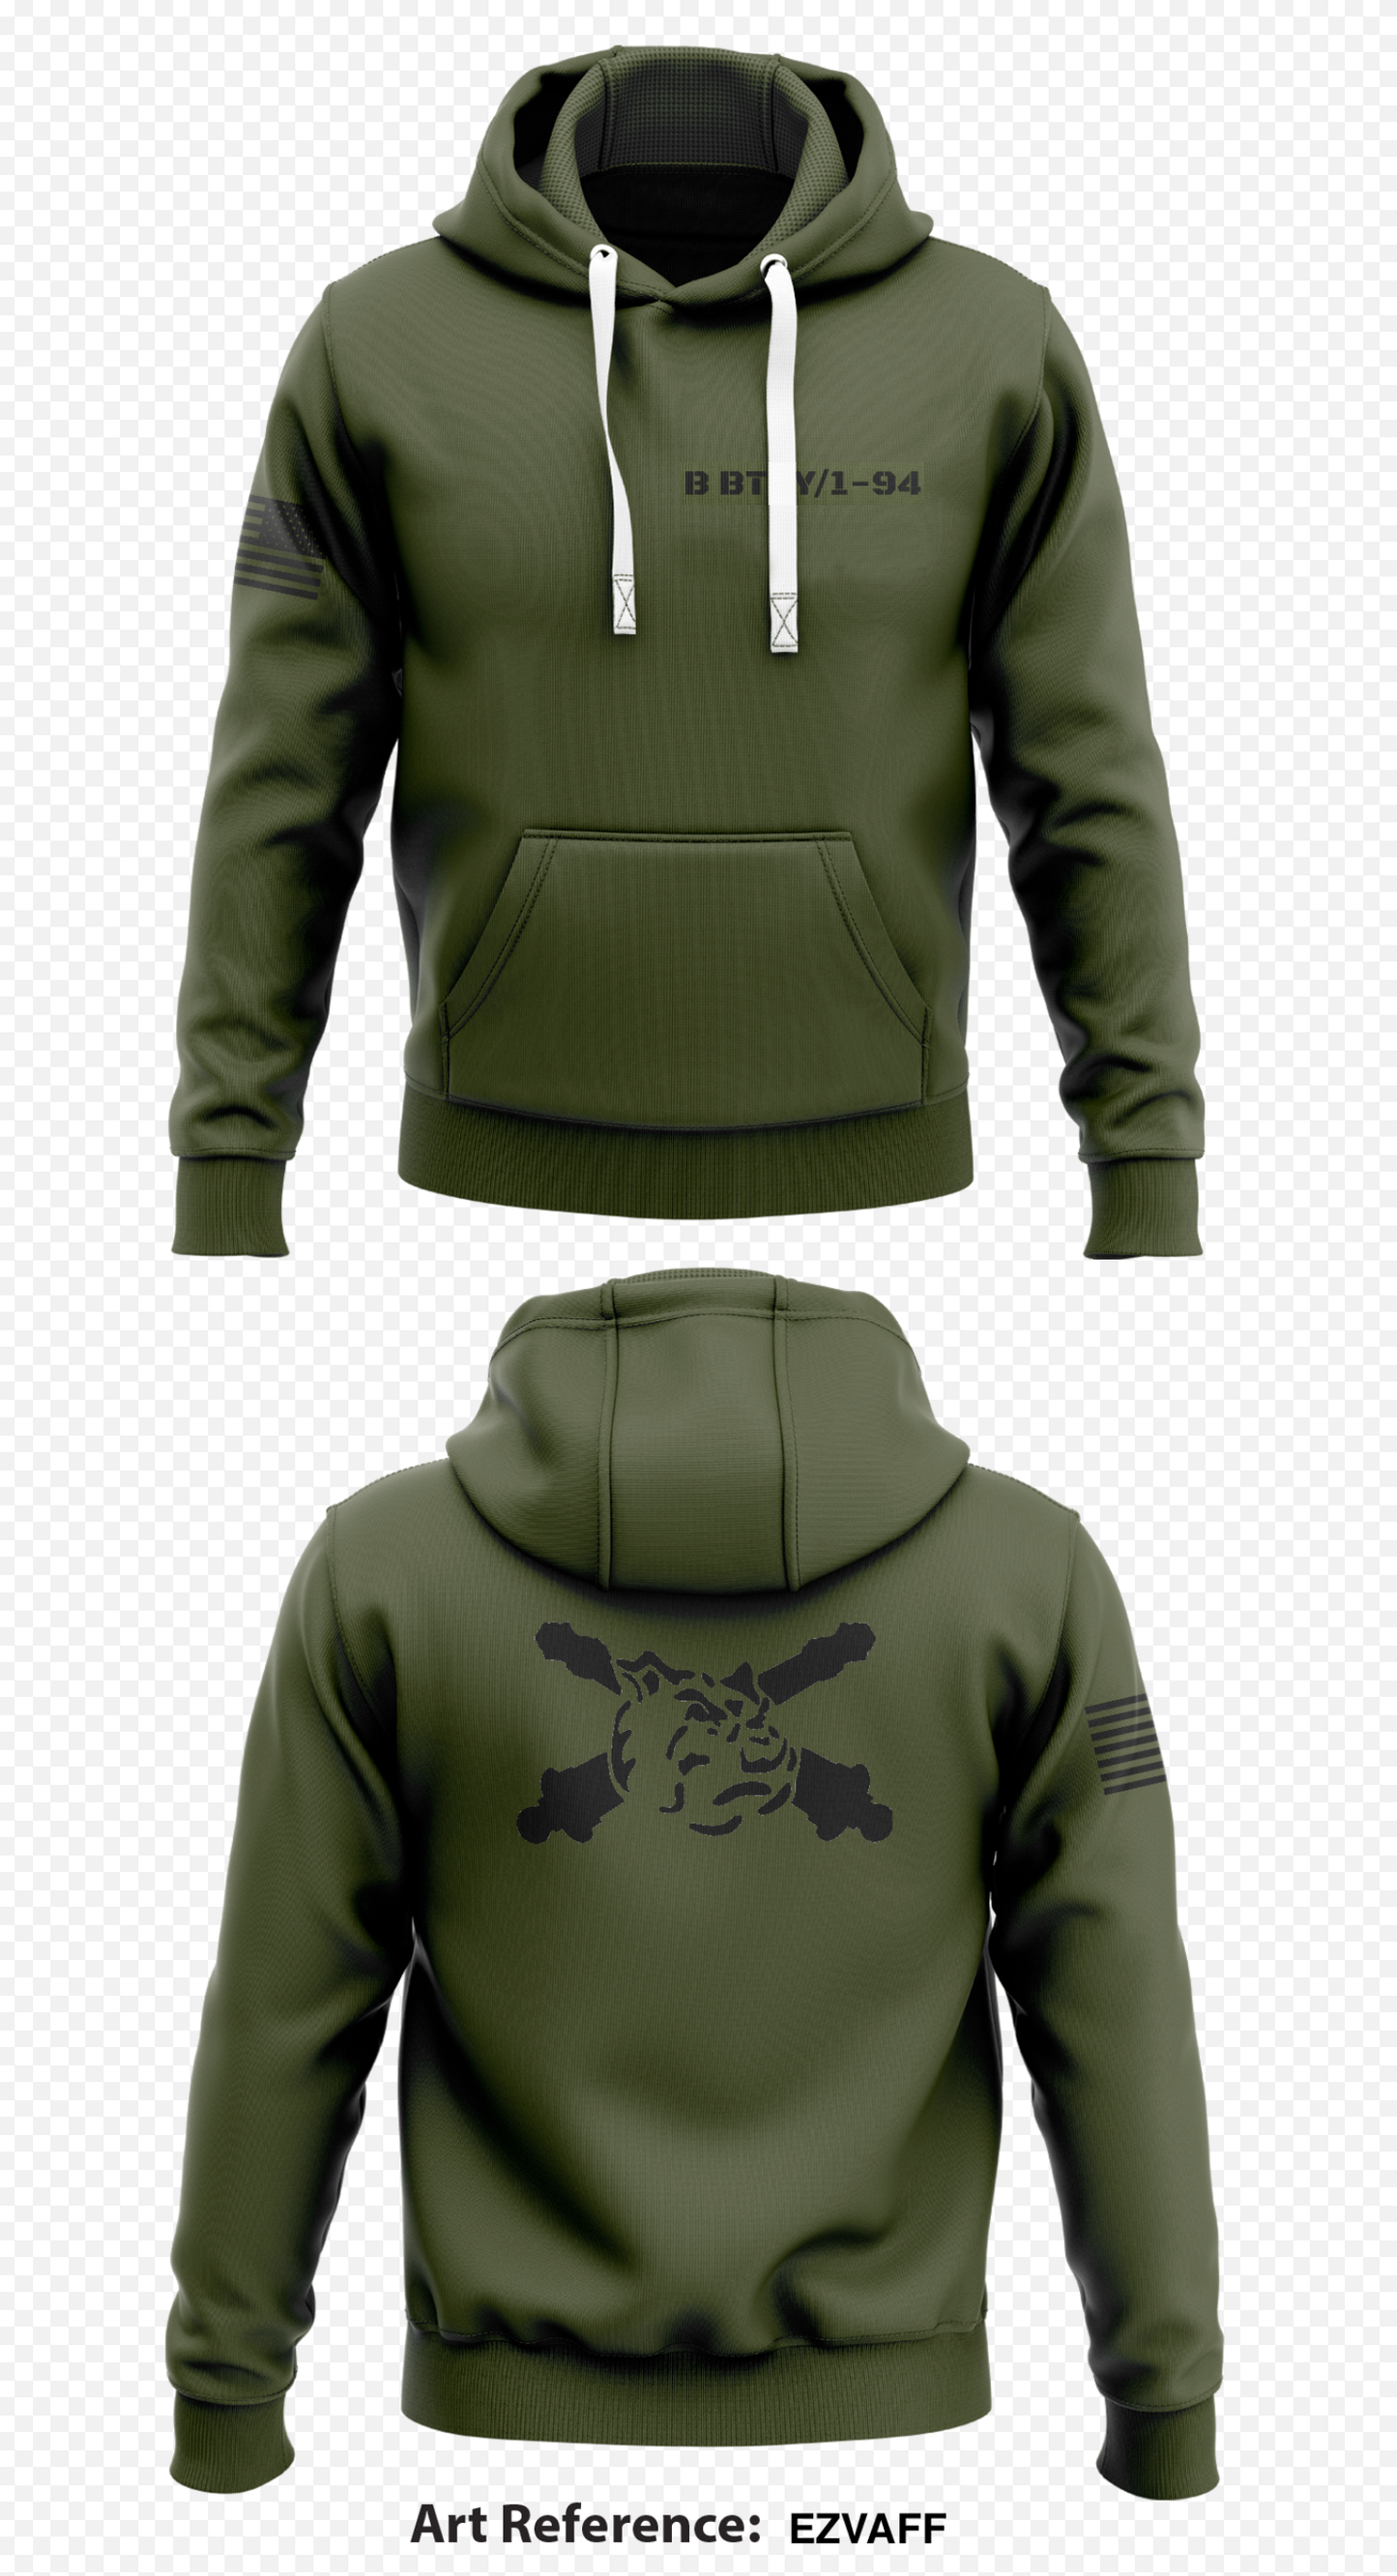 B BTRY/1-94 Store 1  Core Men's Hooded Performance Sweatshirt - EzvAff